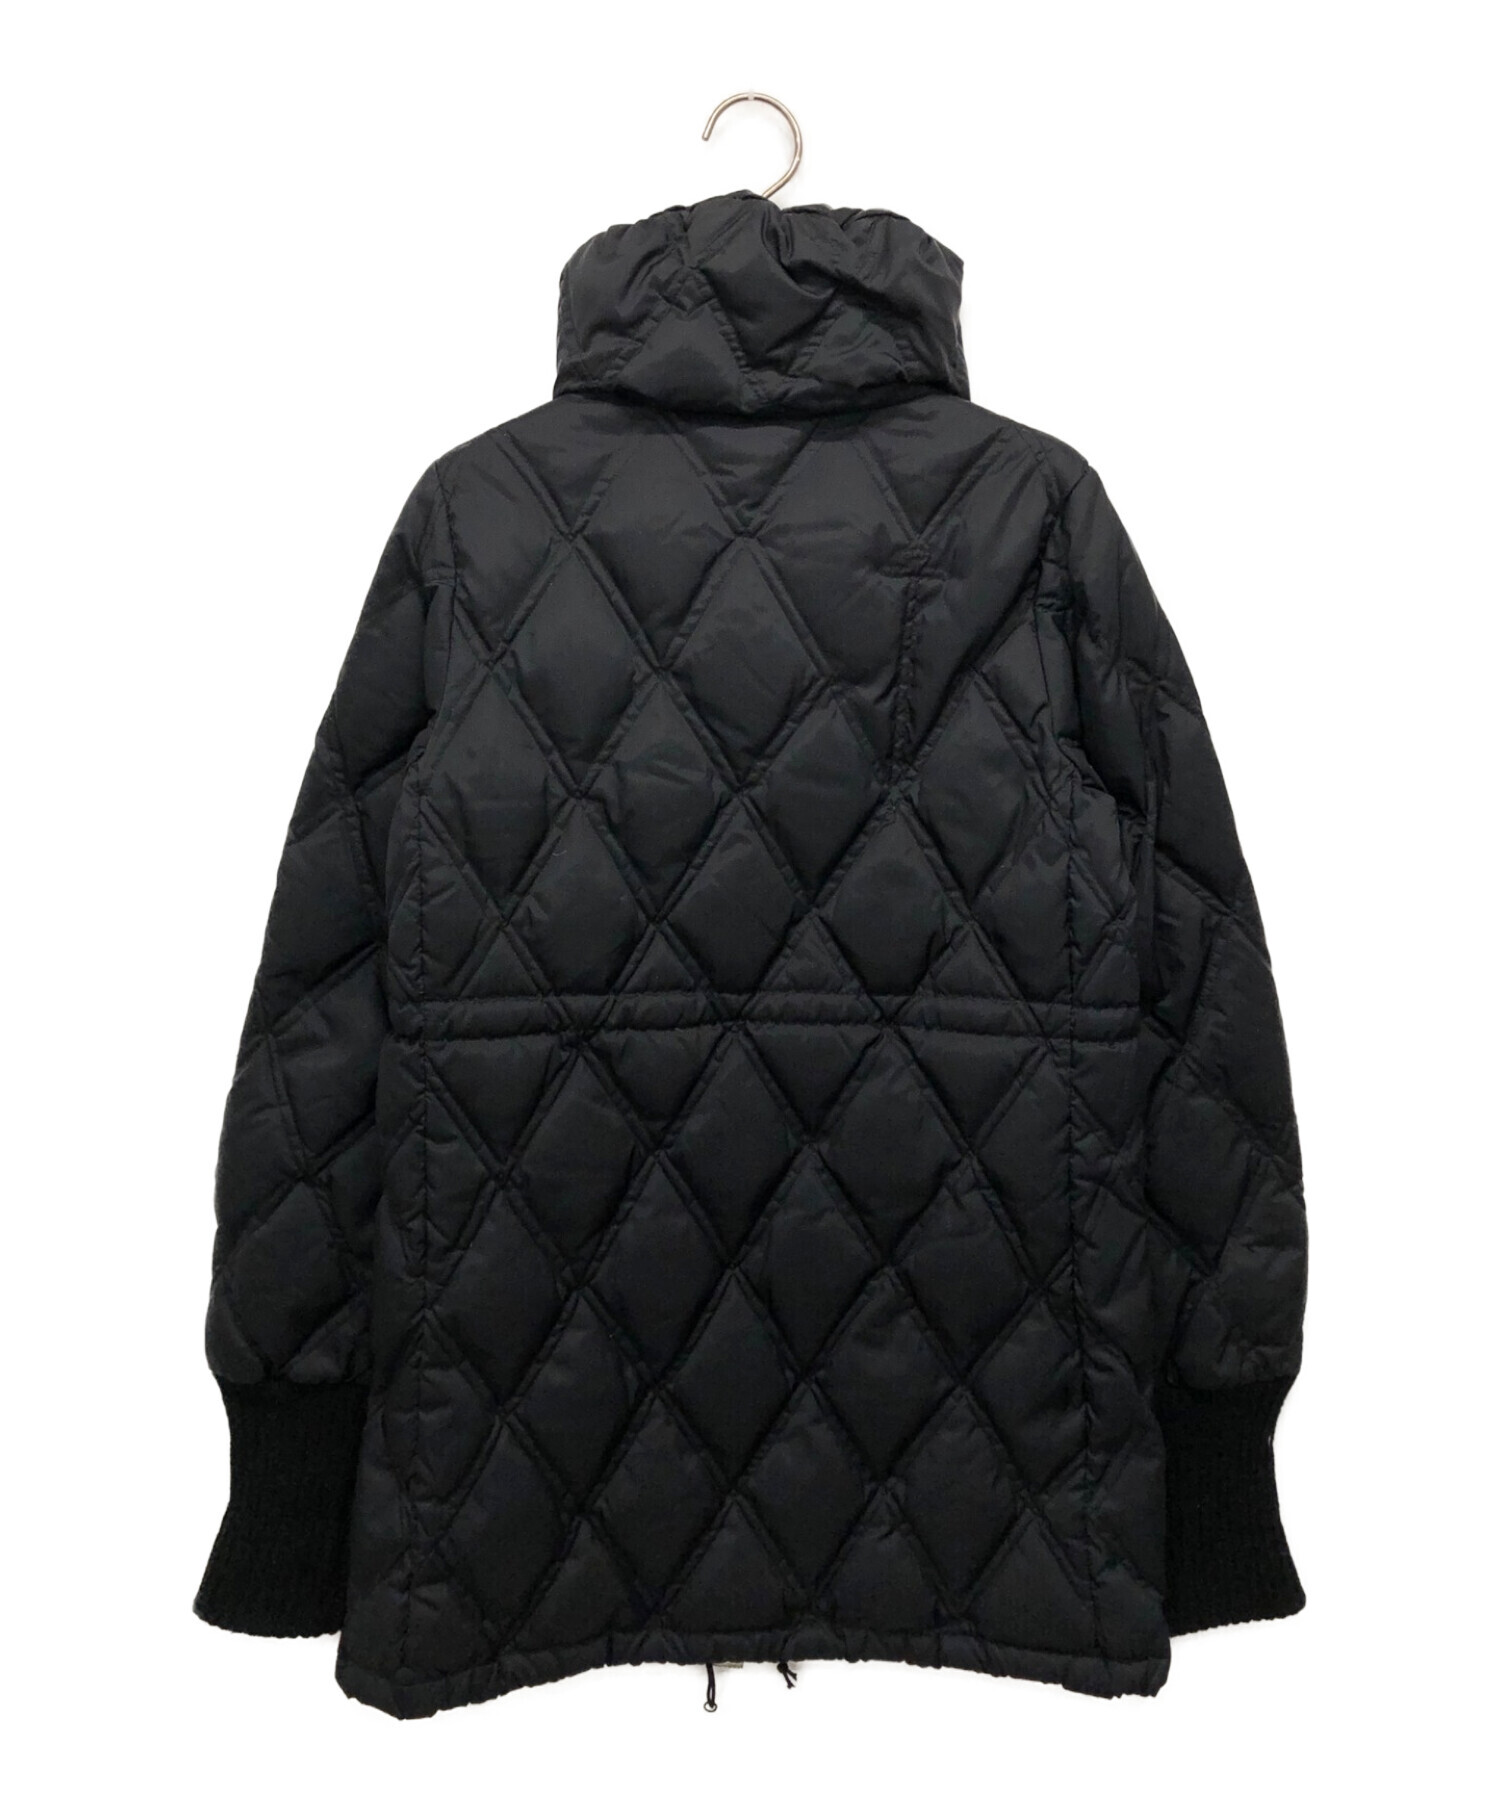 umii908 (ウミ908) ダウンジャケット ブラック サイズ:1